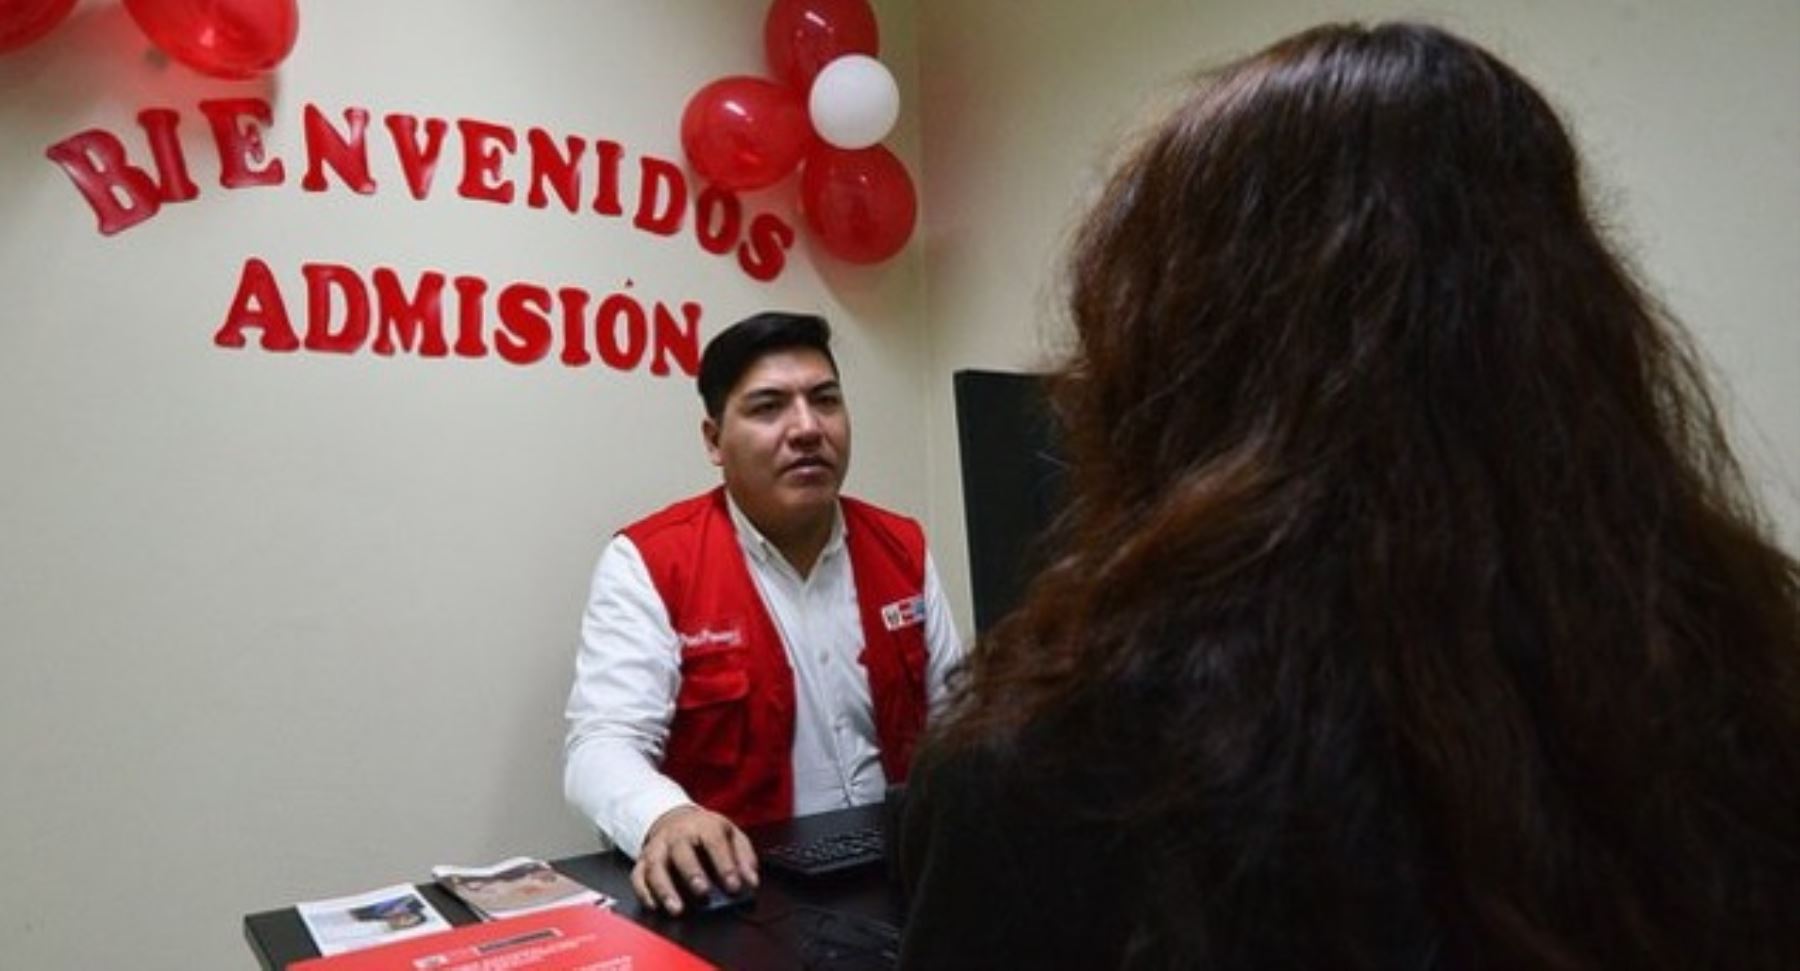 La ministra de la Mujer y Poblaciones Vulnerables, Ana María Mendieta, inaugurará mañana CEM en comisaría El Triunfo, en la región Arequipa. ANDINA/Difusión